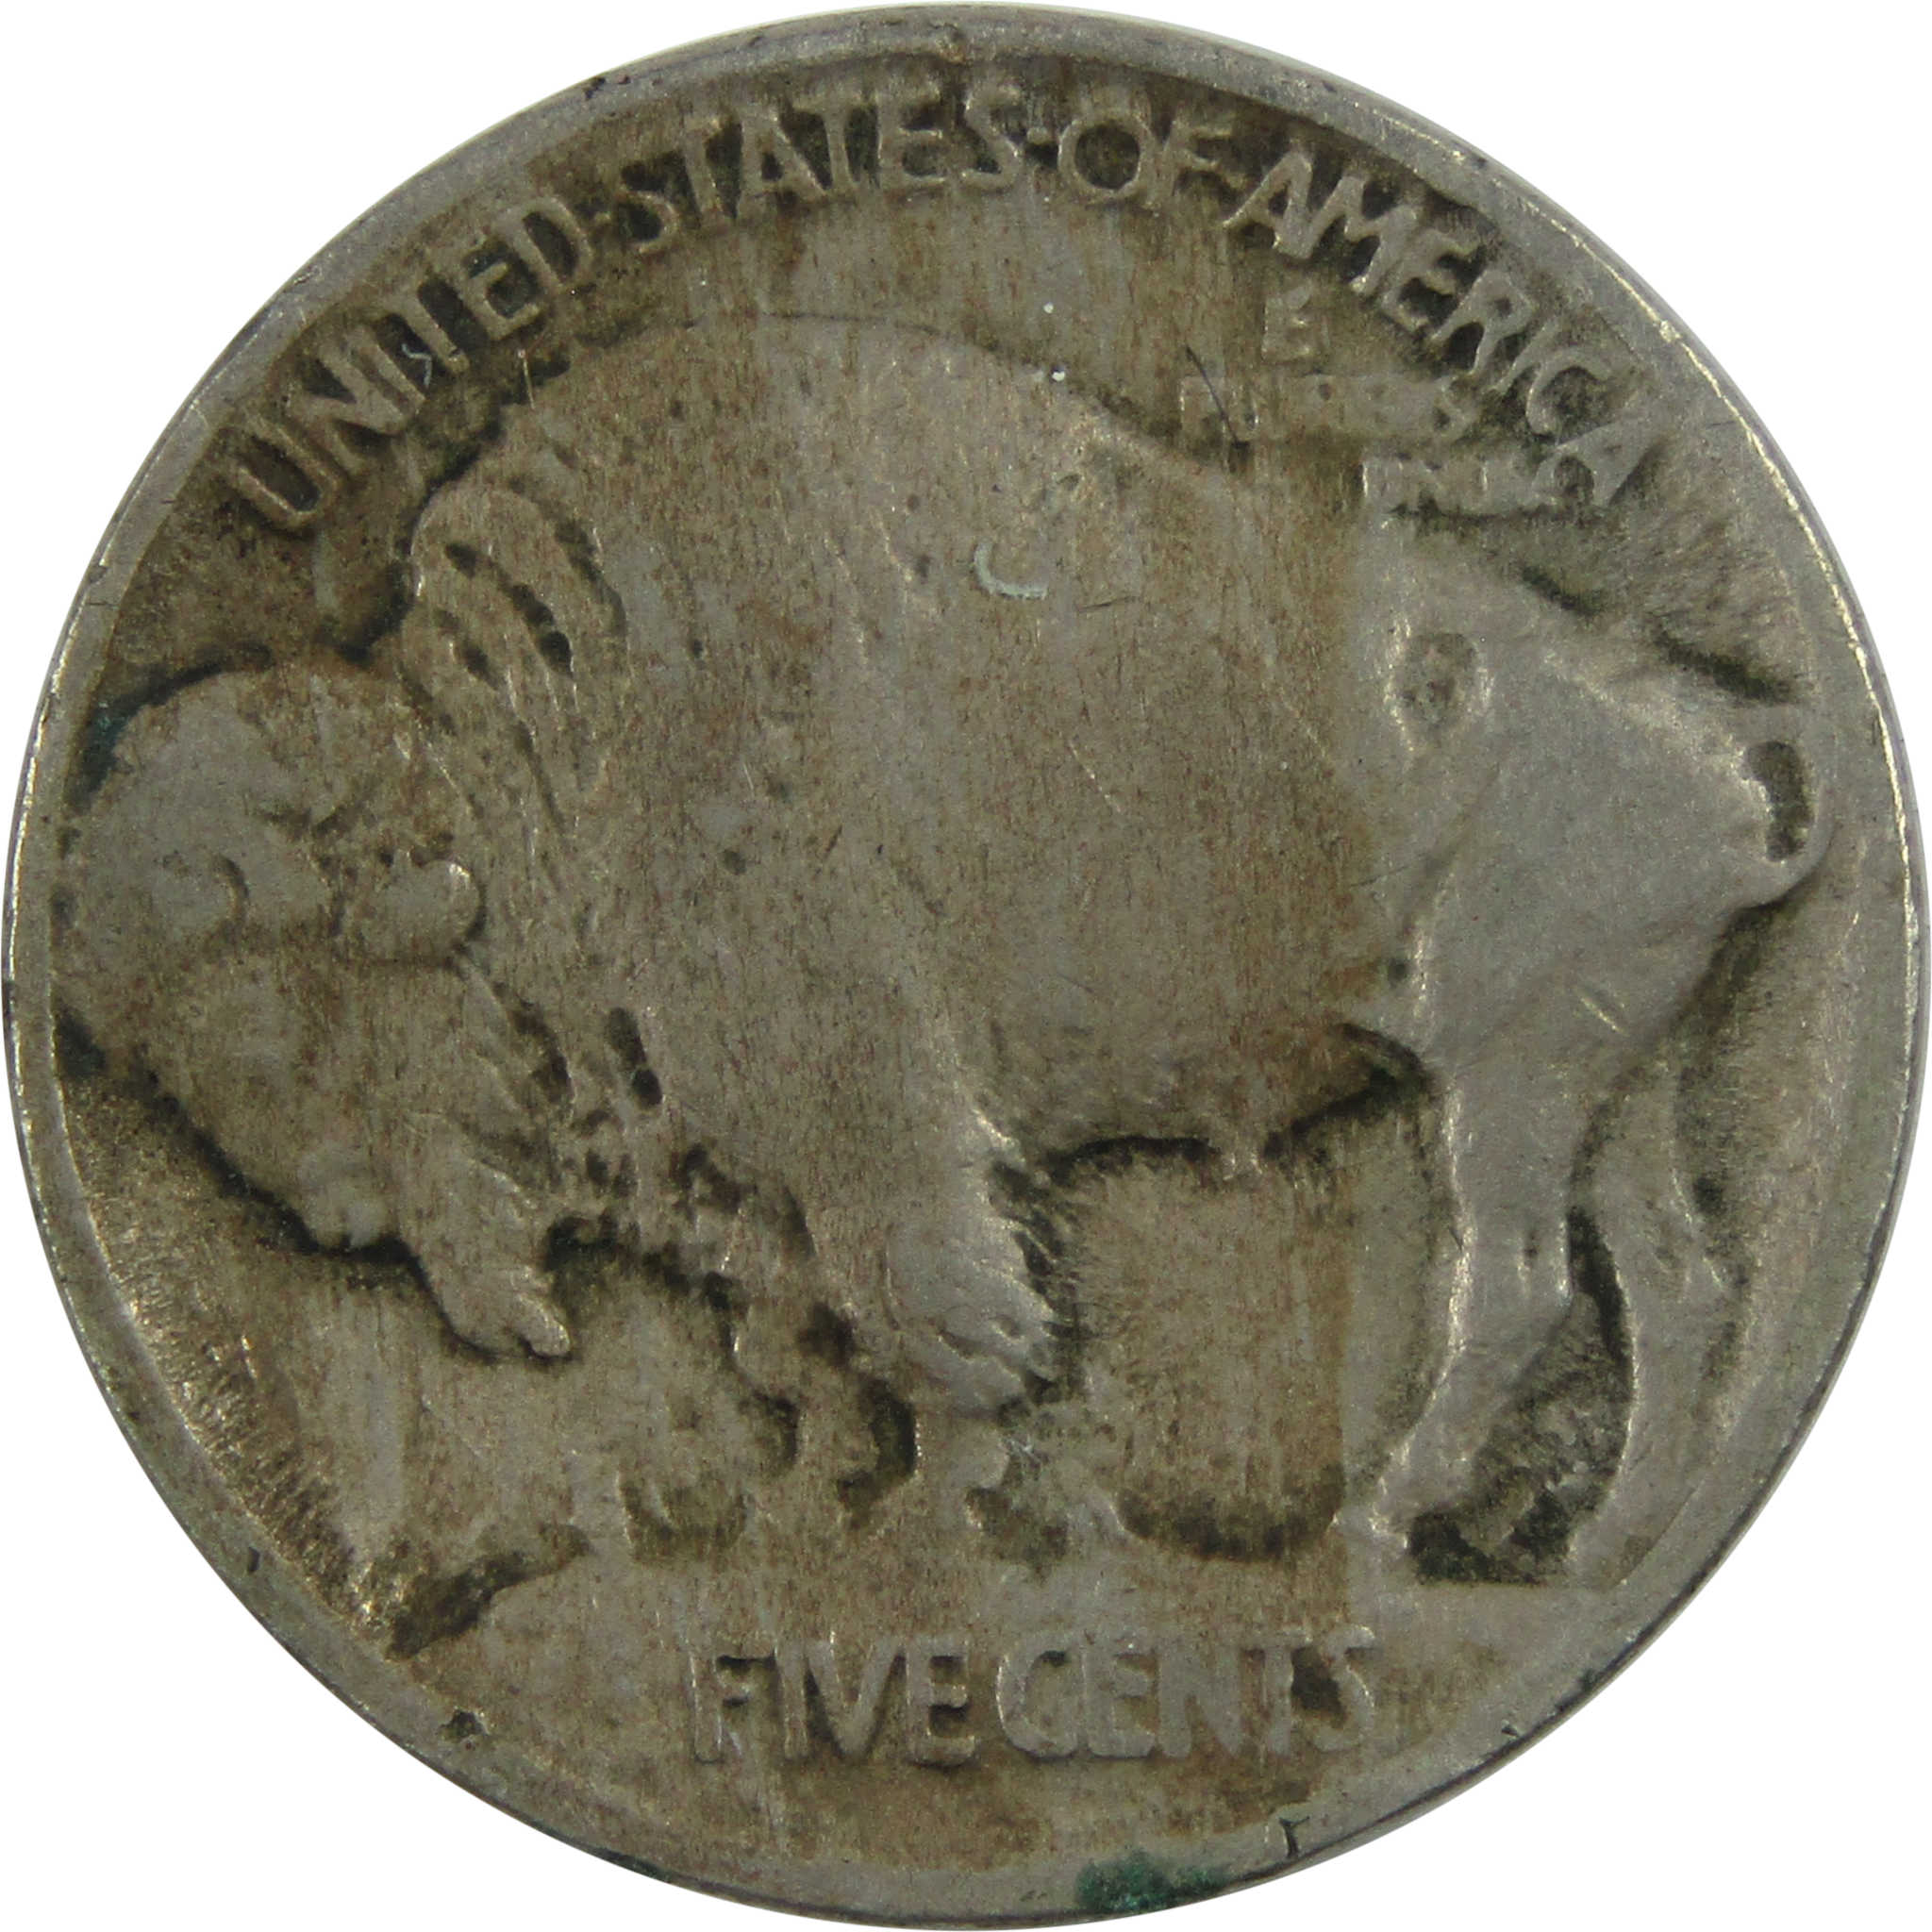 1913 Type 1 Indian Head Buffalo Nickel F Fine 5c Coin SKU:I13471